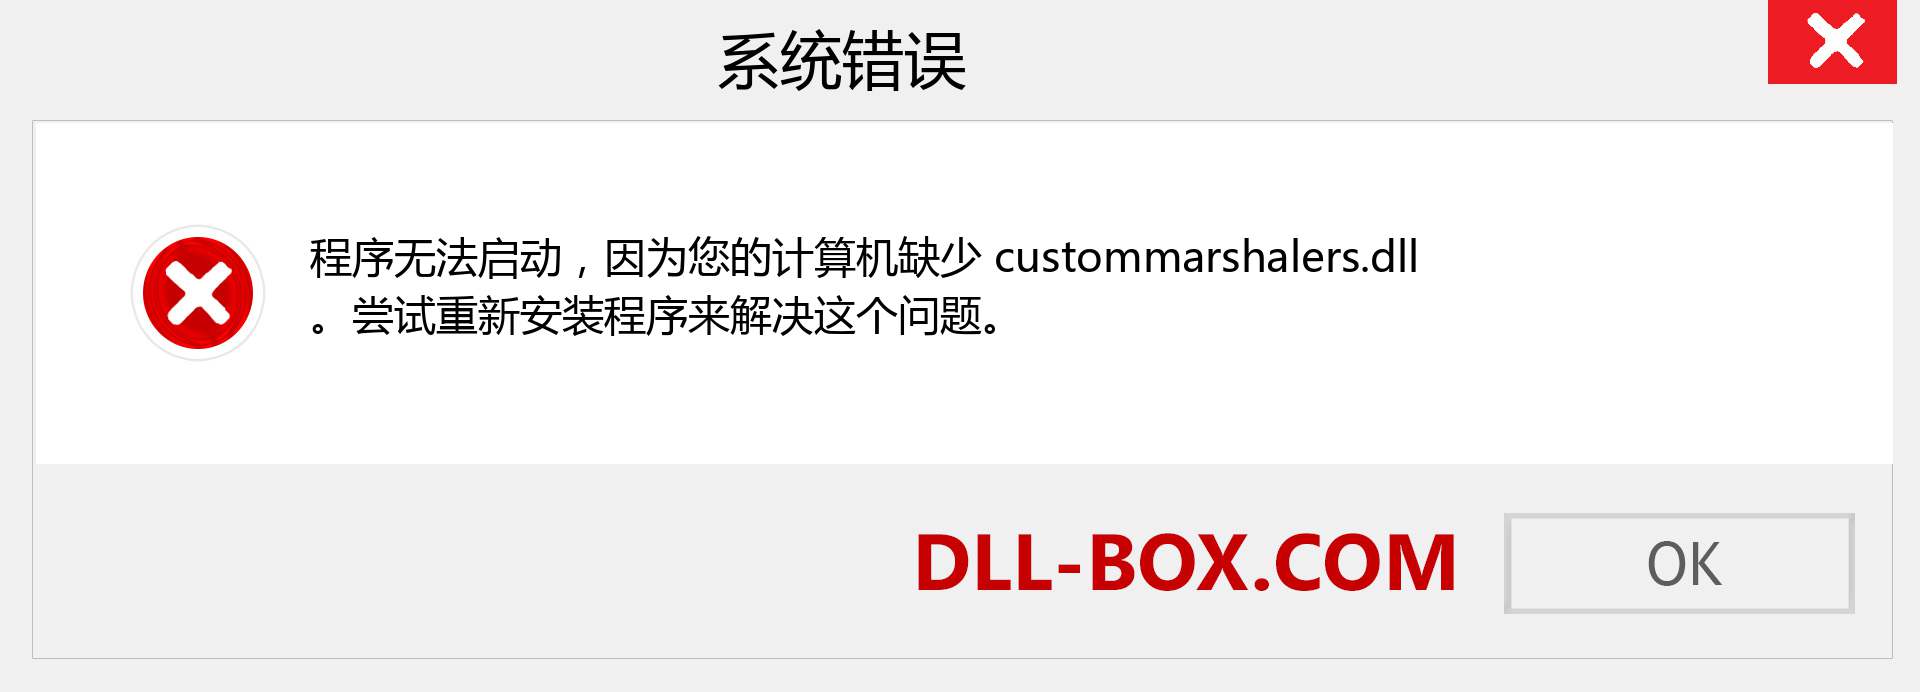 custommarshalers.dll 文件丢失？。 适用于 Windows 7、8、10 的下载 - 修复 Windows、照片、图像上的 custommarshalers dll 丢失错误